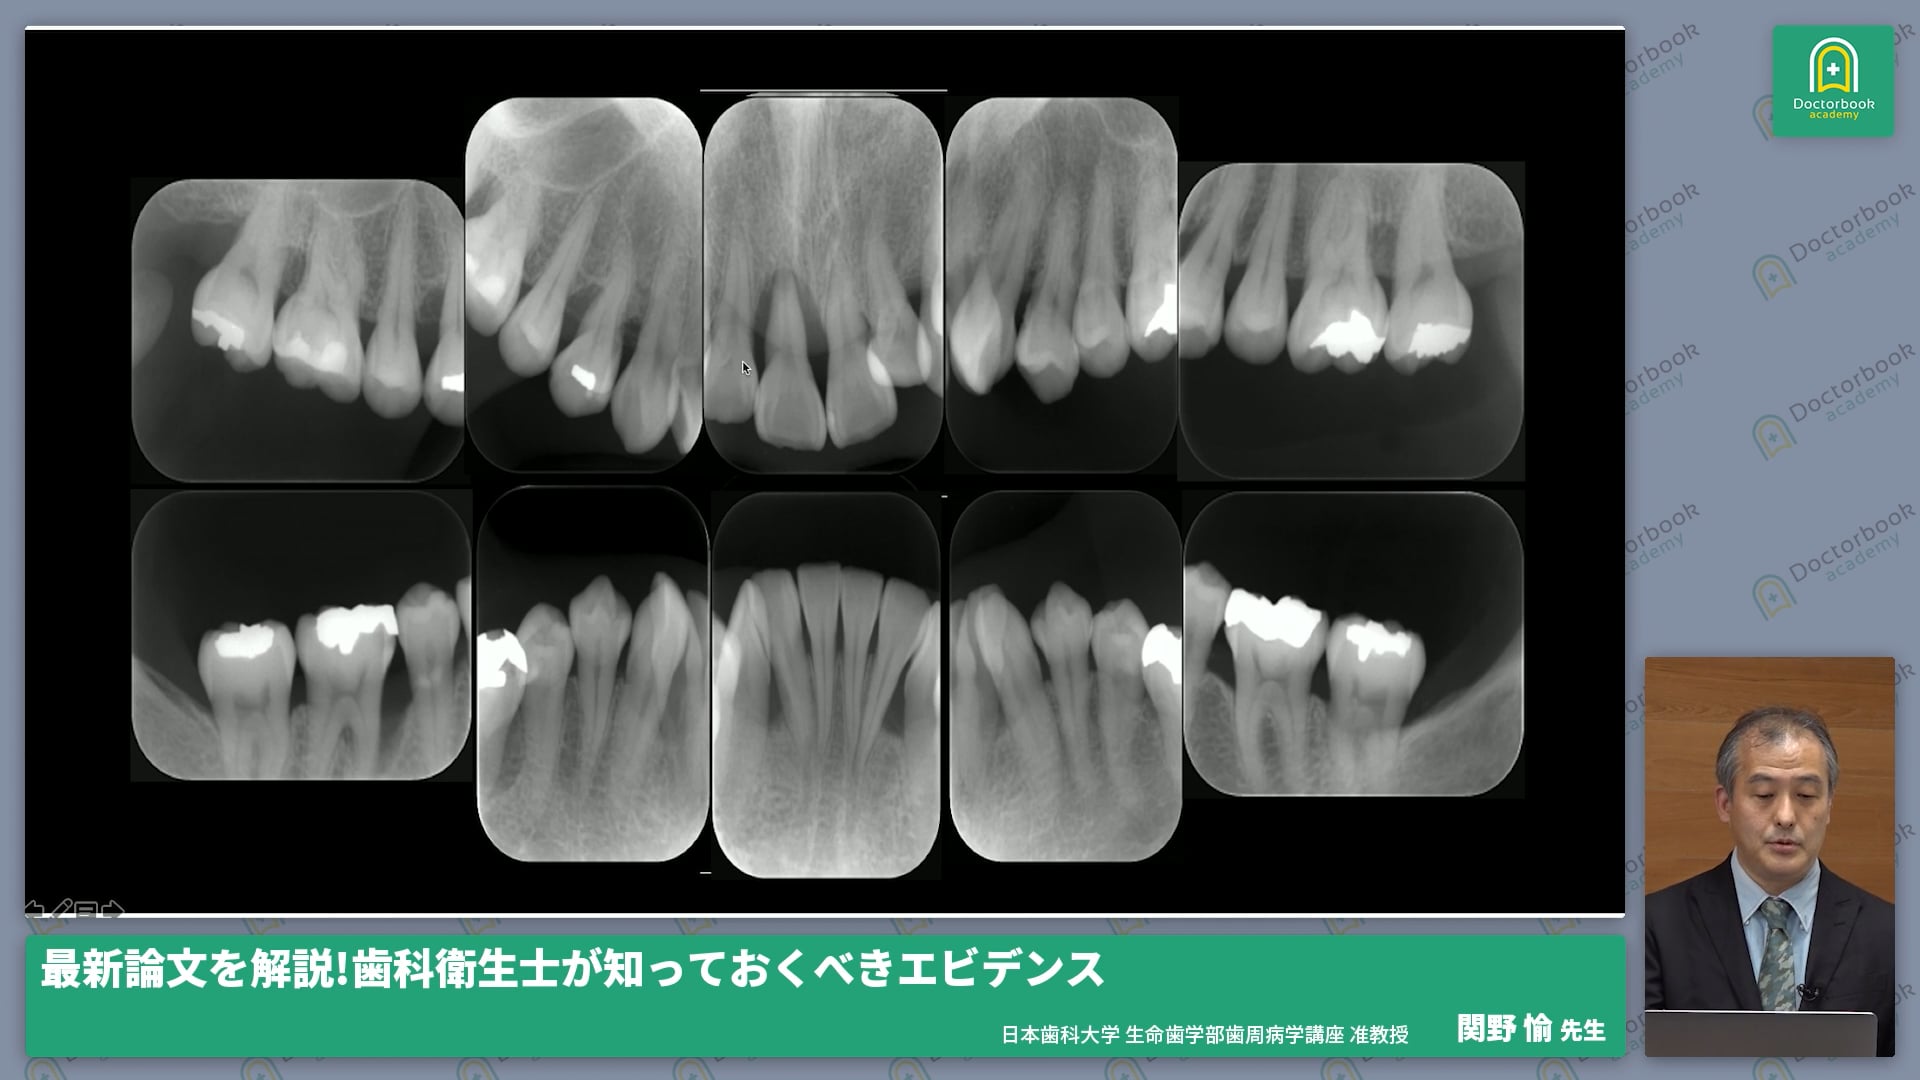 低侵襲非外科的歯周治療の最新研究結果、症例分析 #4